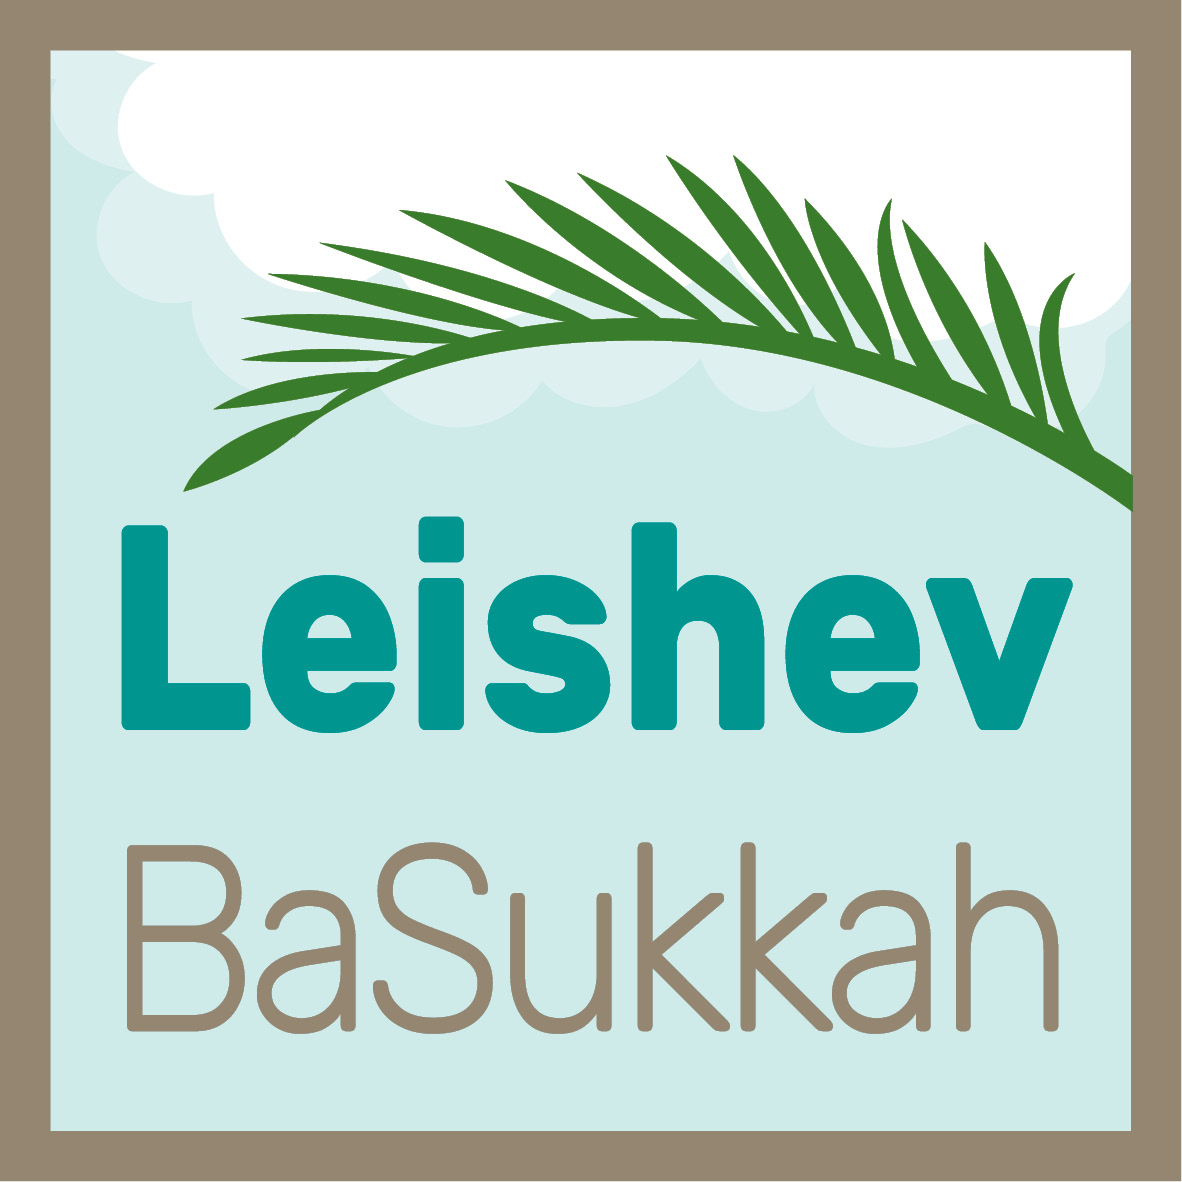 Leishev BaSukkah